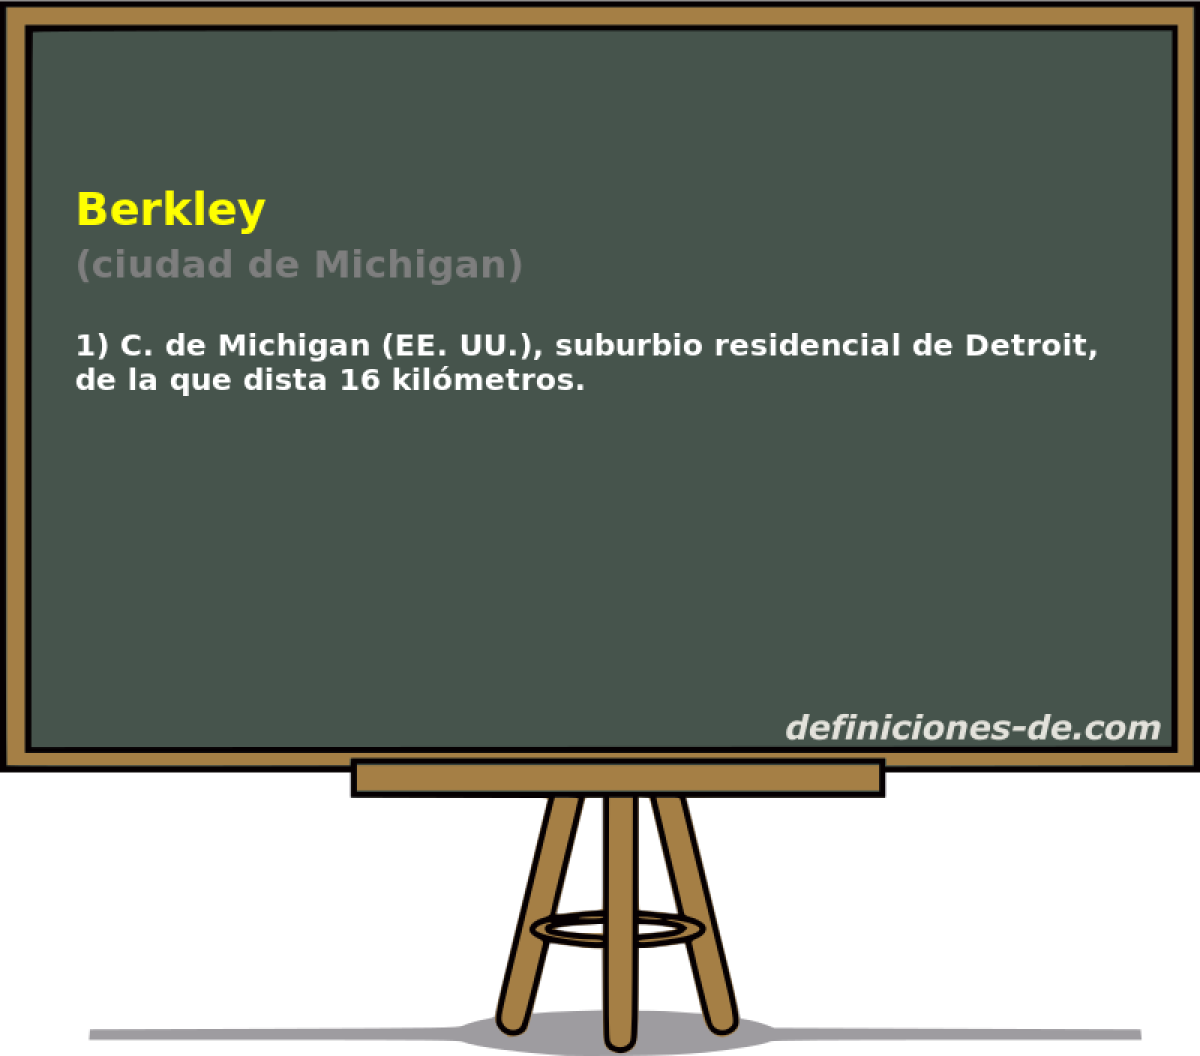 Berkley (ciudad de Michigan)